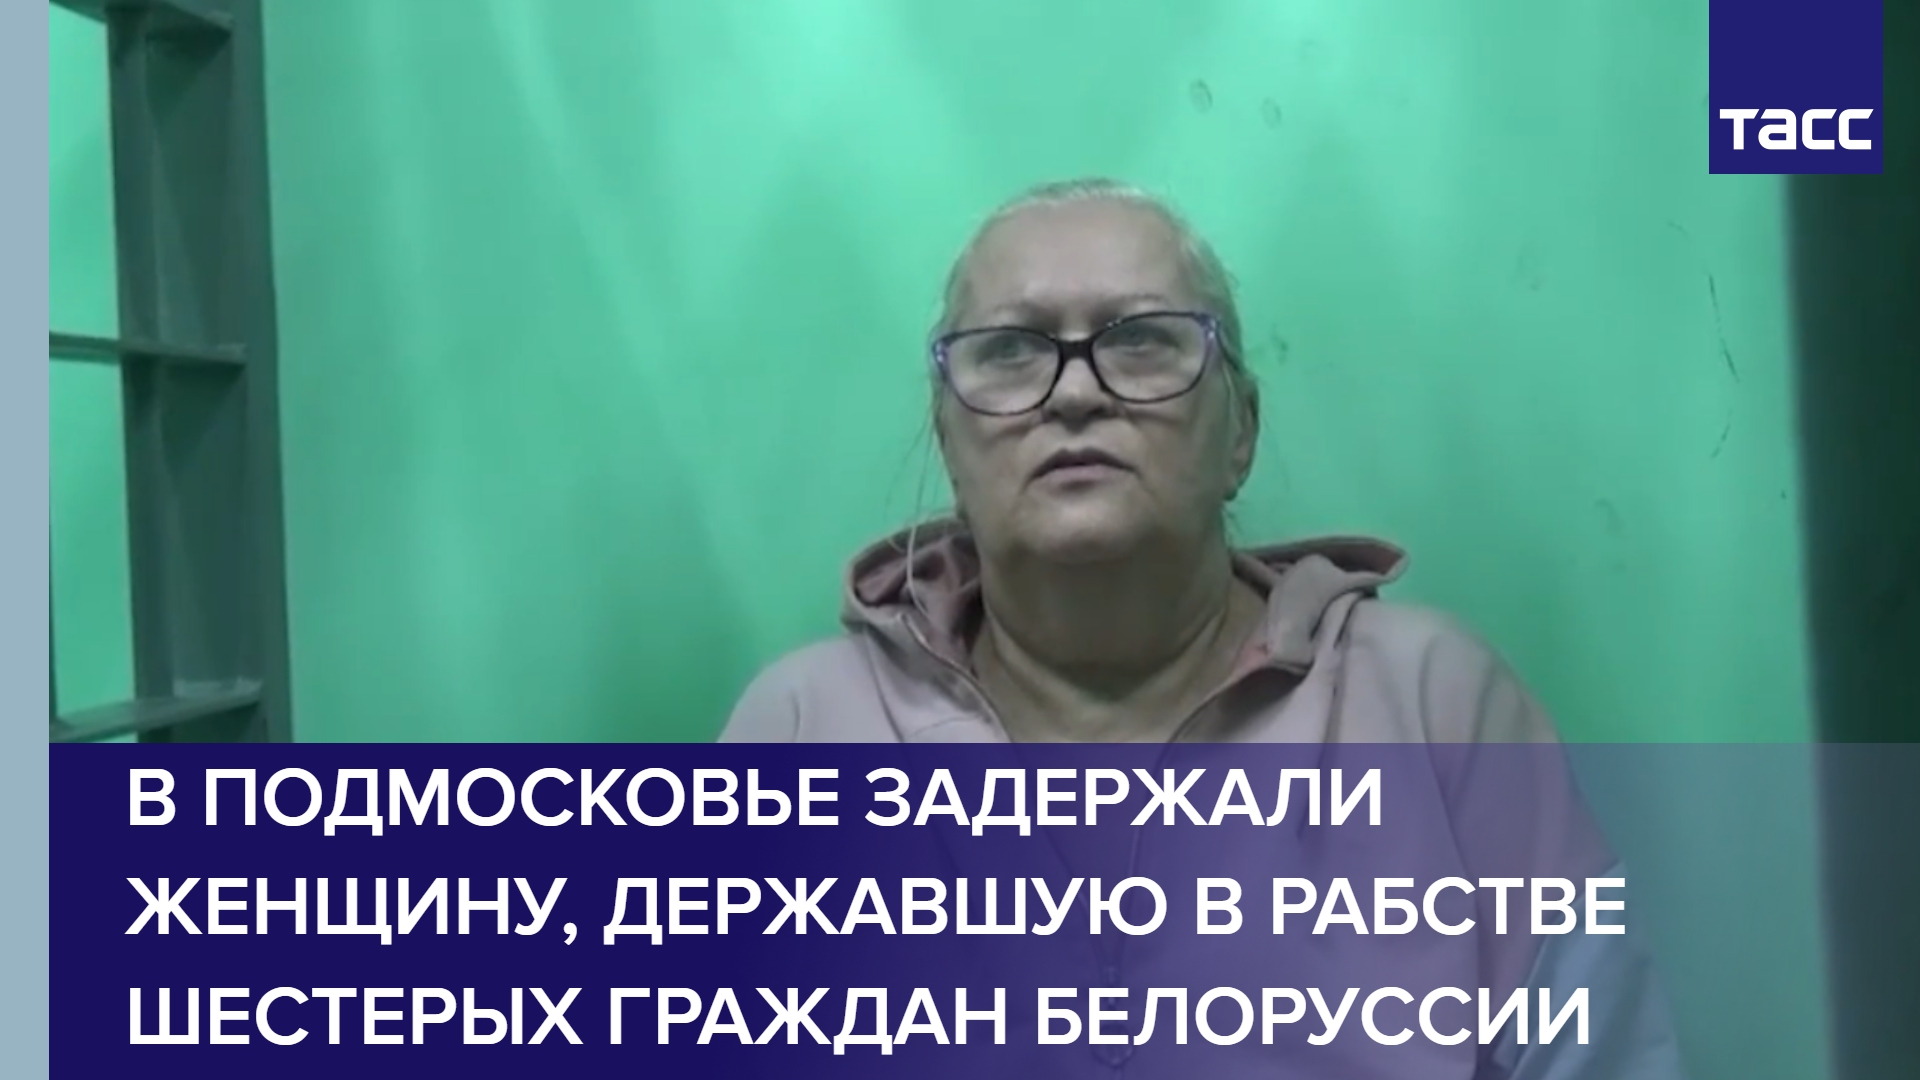 В Подмосковье задержали женщину, державшую в рабстве шестерых граждан Белоруссии